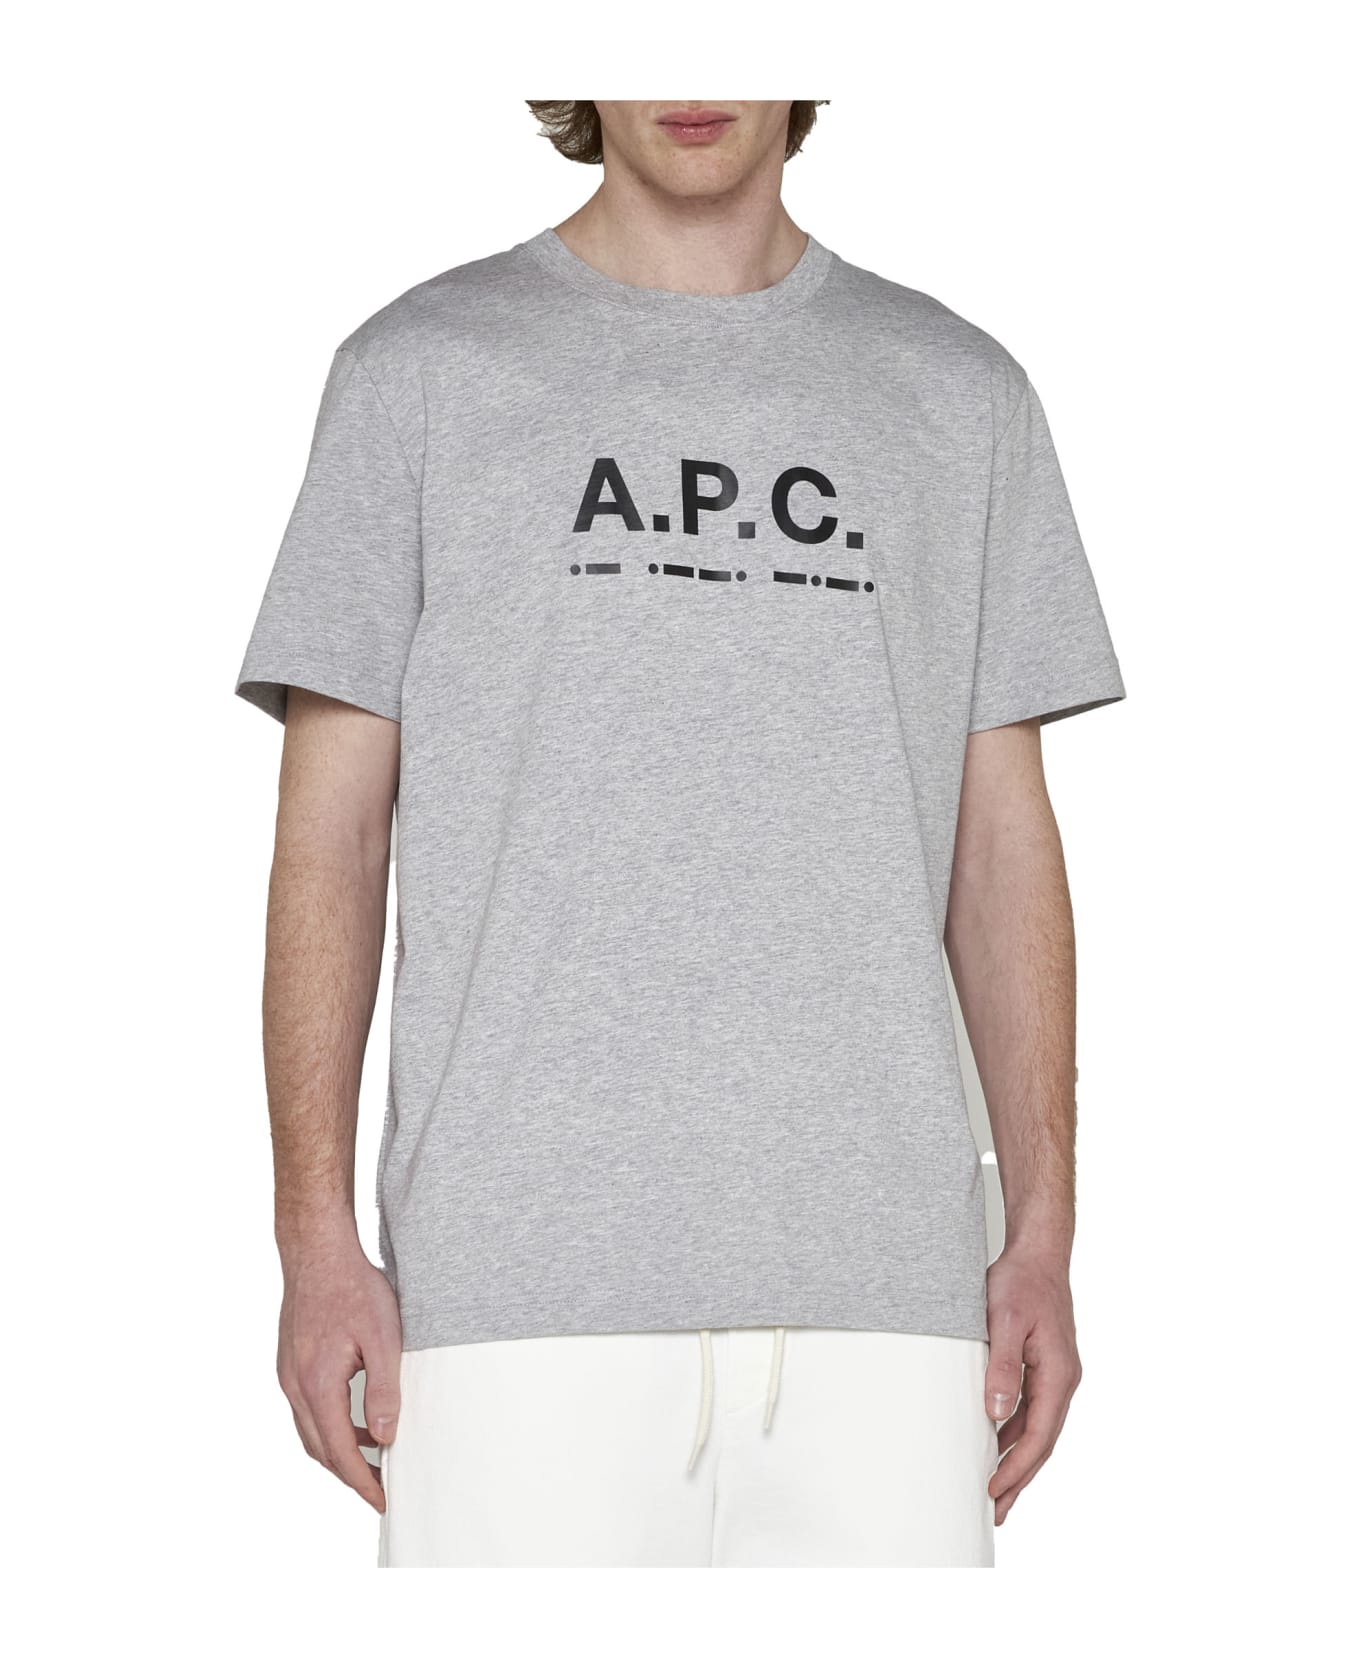 A.P.C. Sven T-shirt - Heathered grey